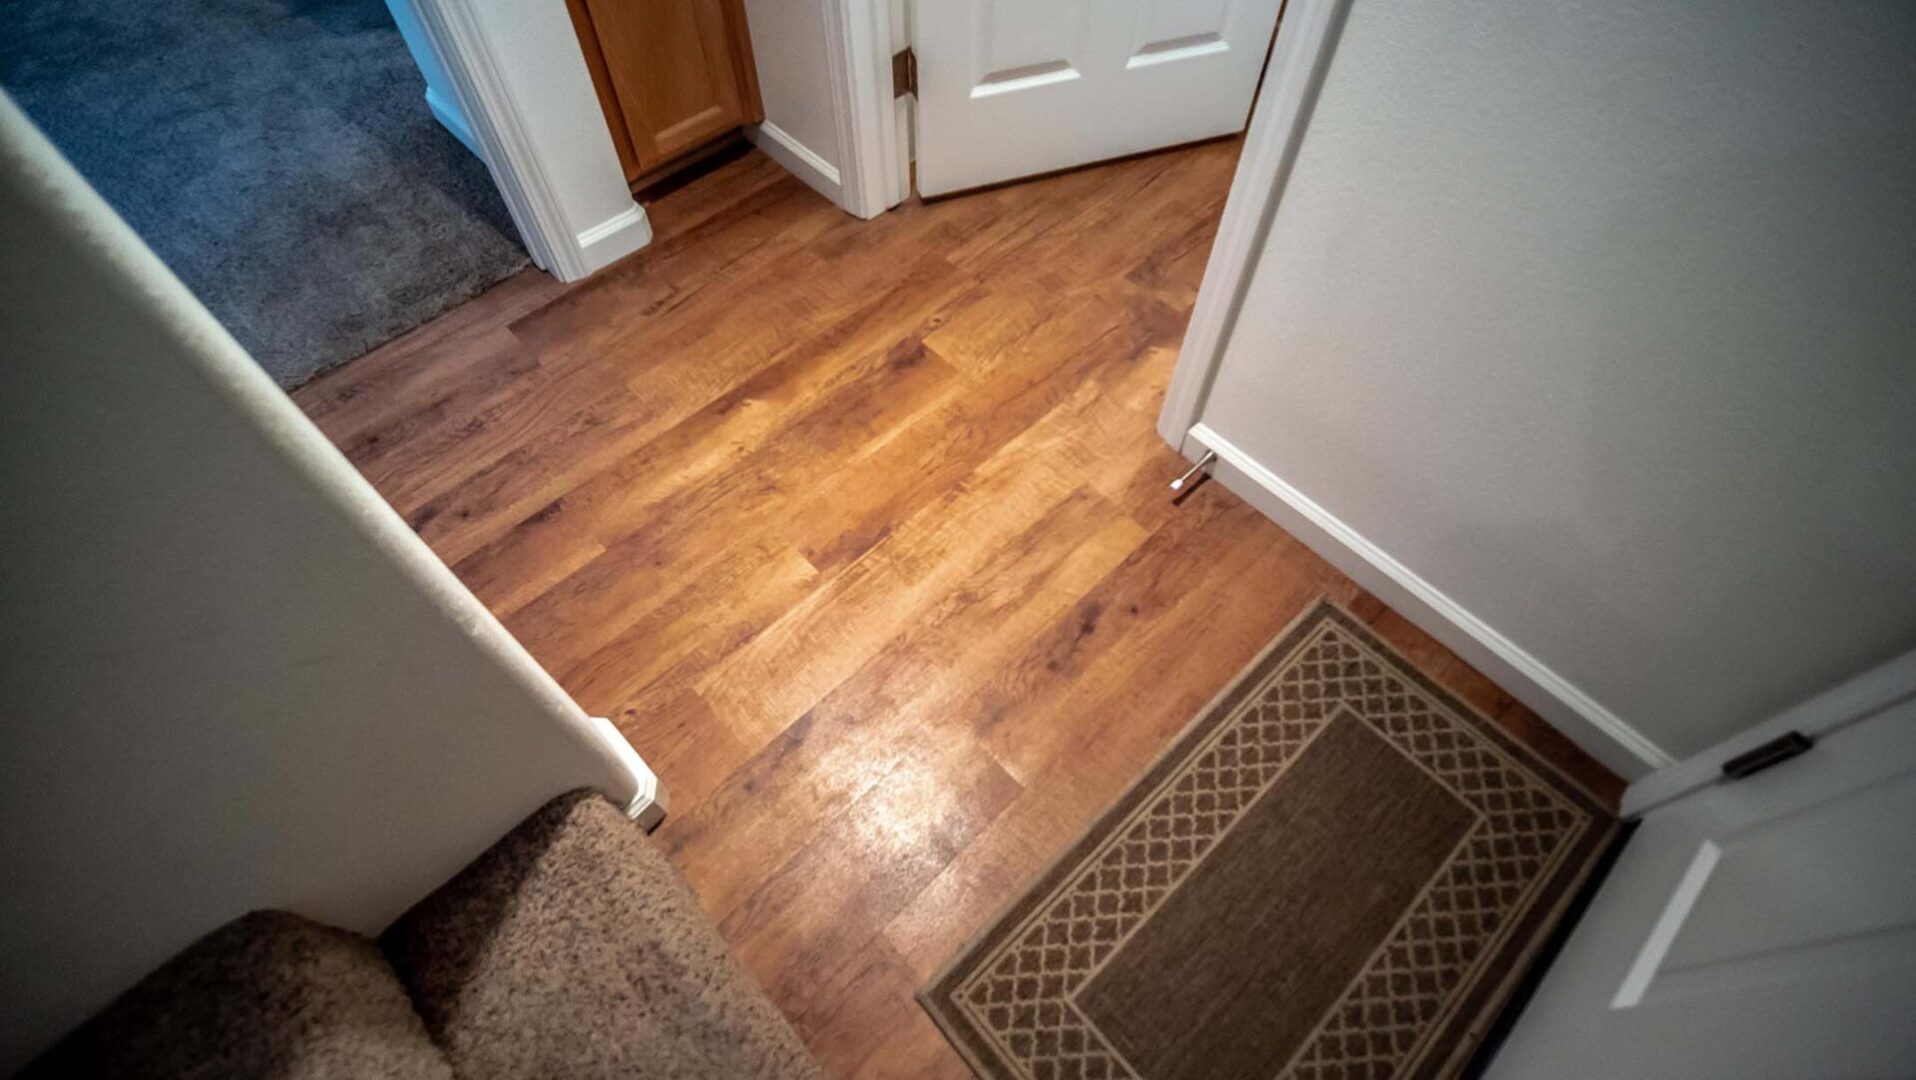 A door way with a rug and wooden floor